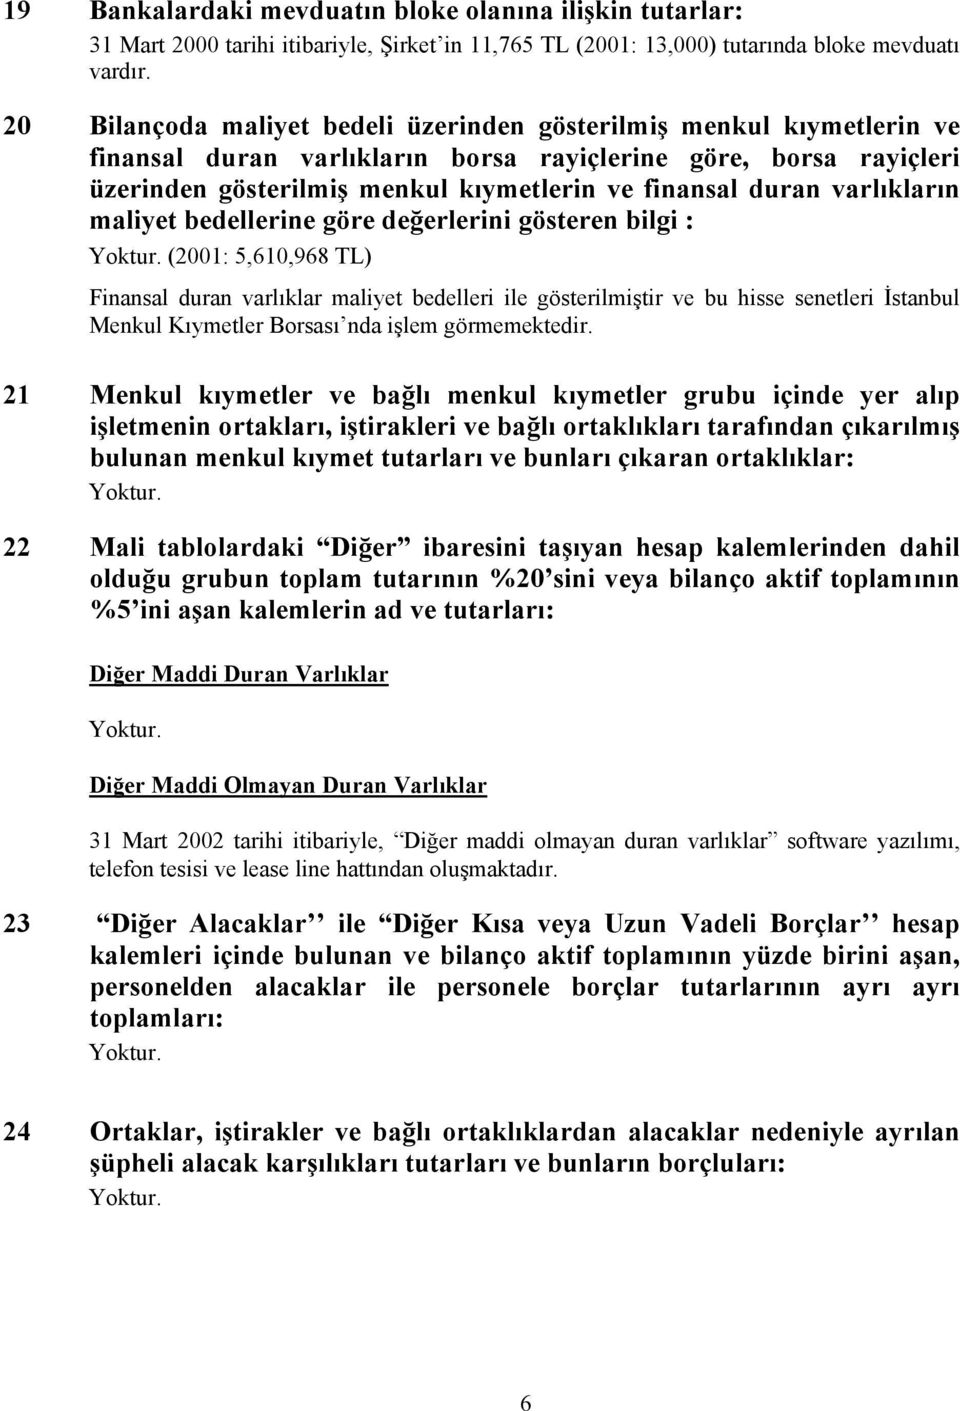 varlıkların maliyet bedellerine göre değerlerini gösteren bilgi : (2001: 5,610,968 TL) Finansal duran varlıklar maliyet bedelleri ile gösterilmiştir ve bu hisse senetleri İstanbul Menkul Kıymetler